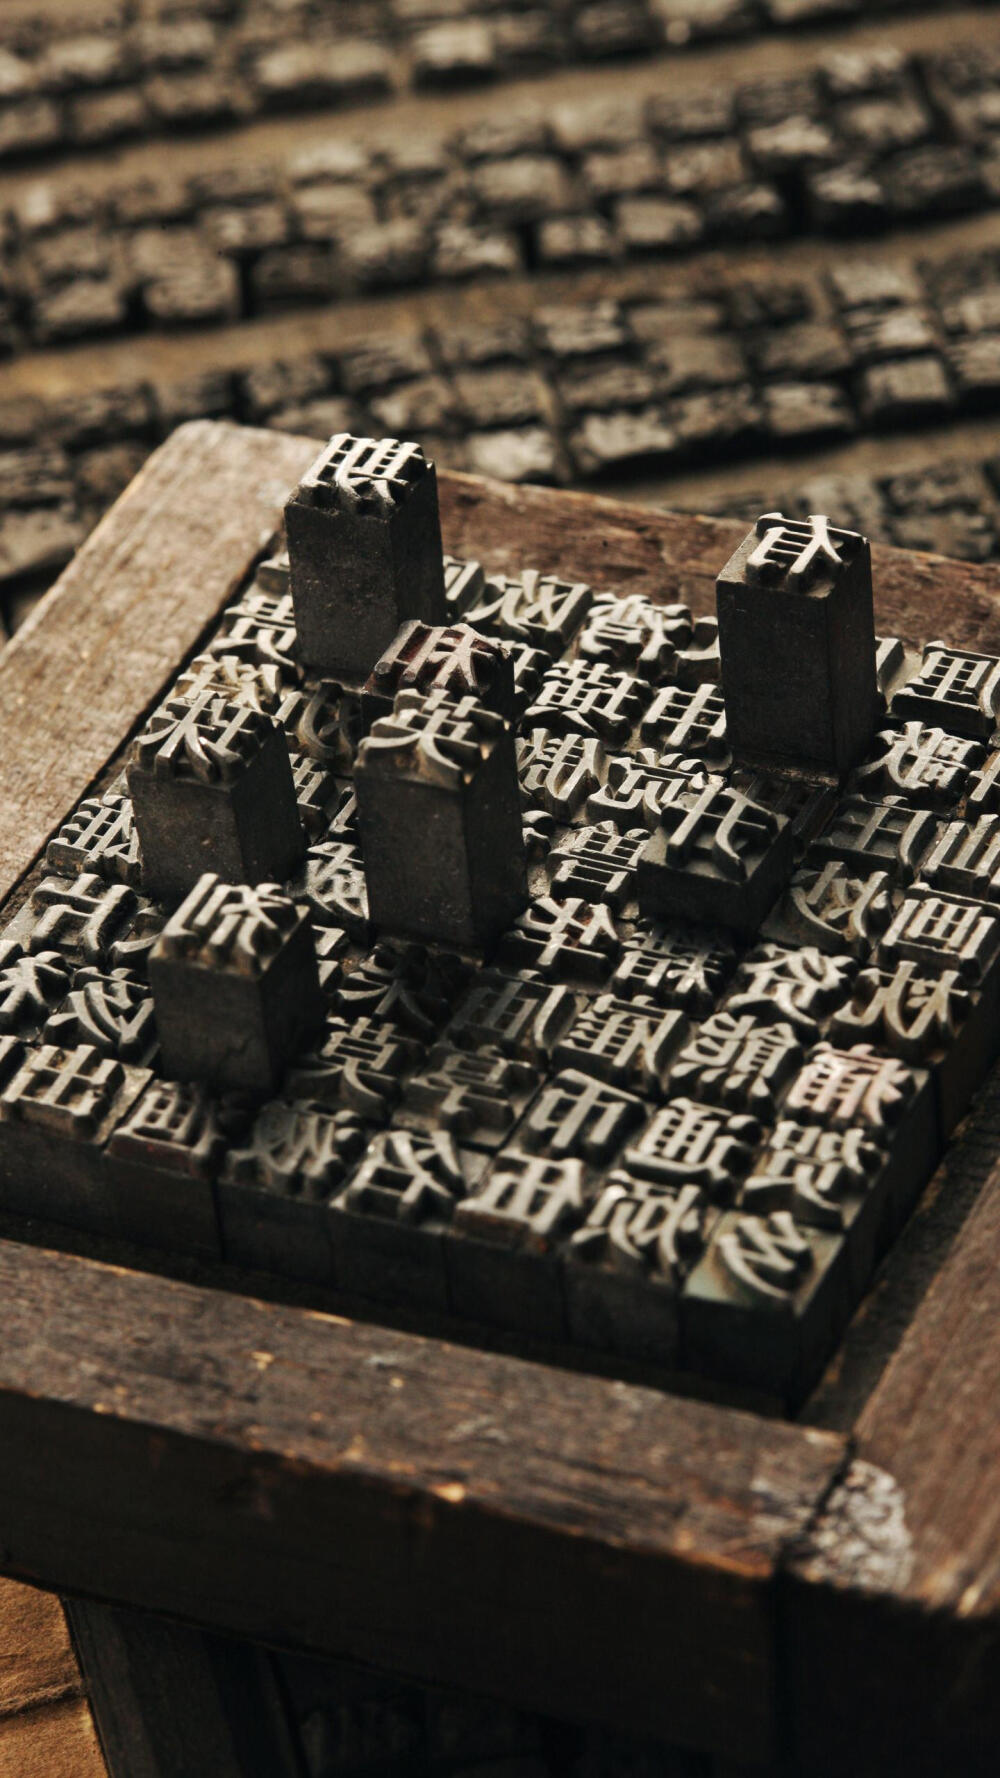 活字印刷术北宋时毕升发明的泥活字标志活字印刷的诞生,也是印刷史上